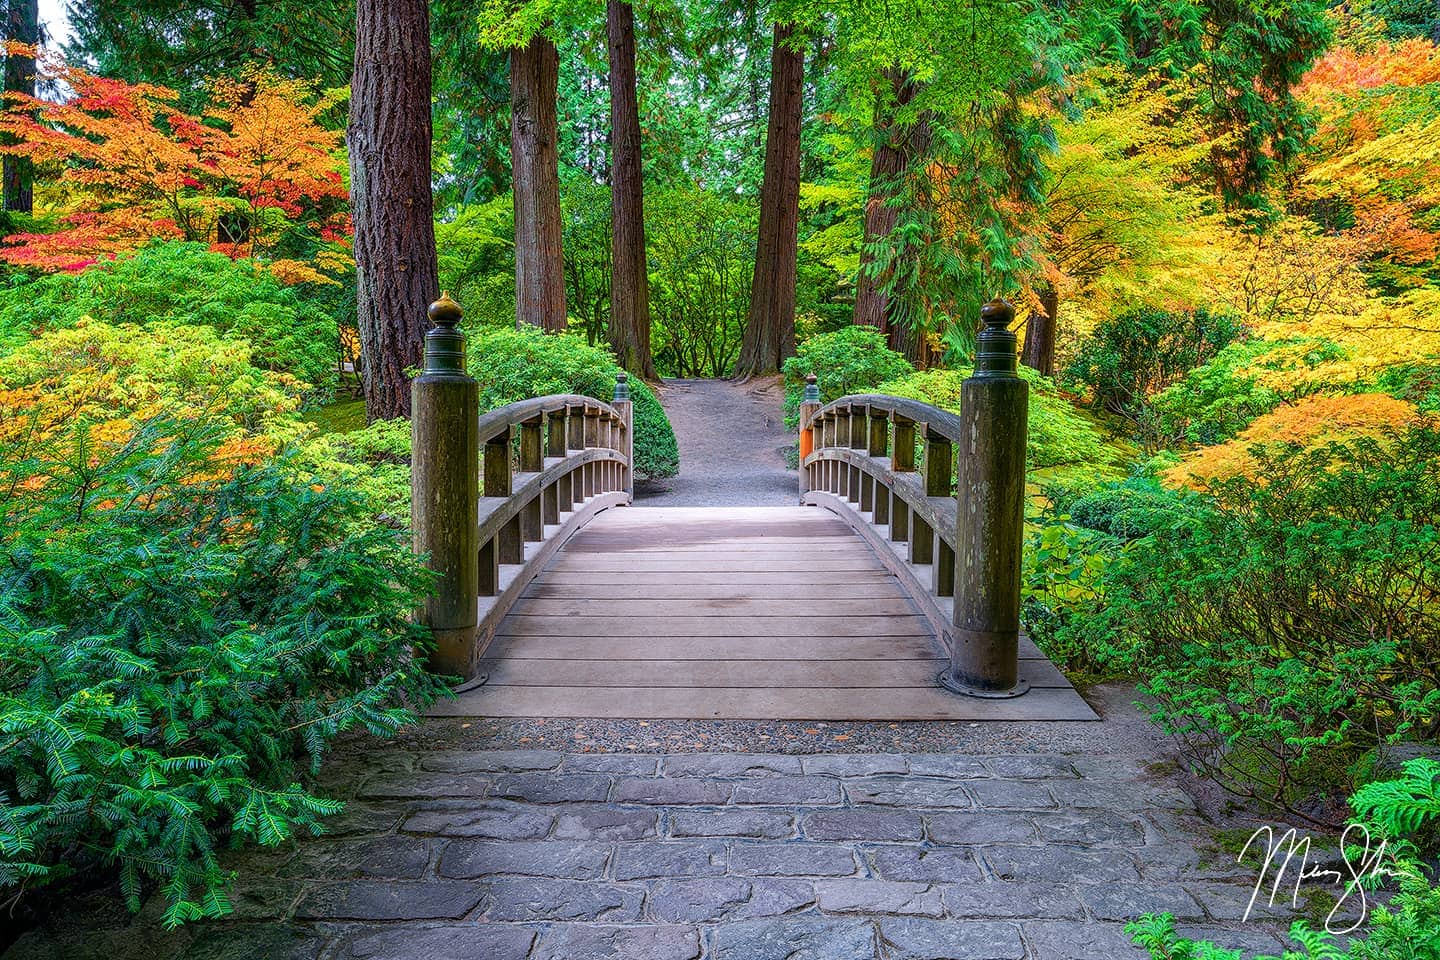  Japanese Bridge Garden Nature Landscape Picture Print